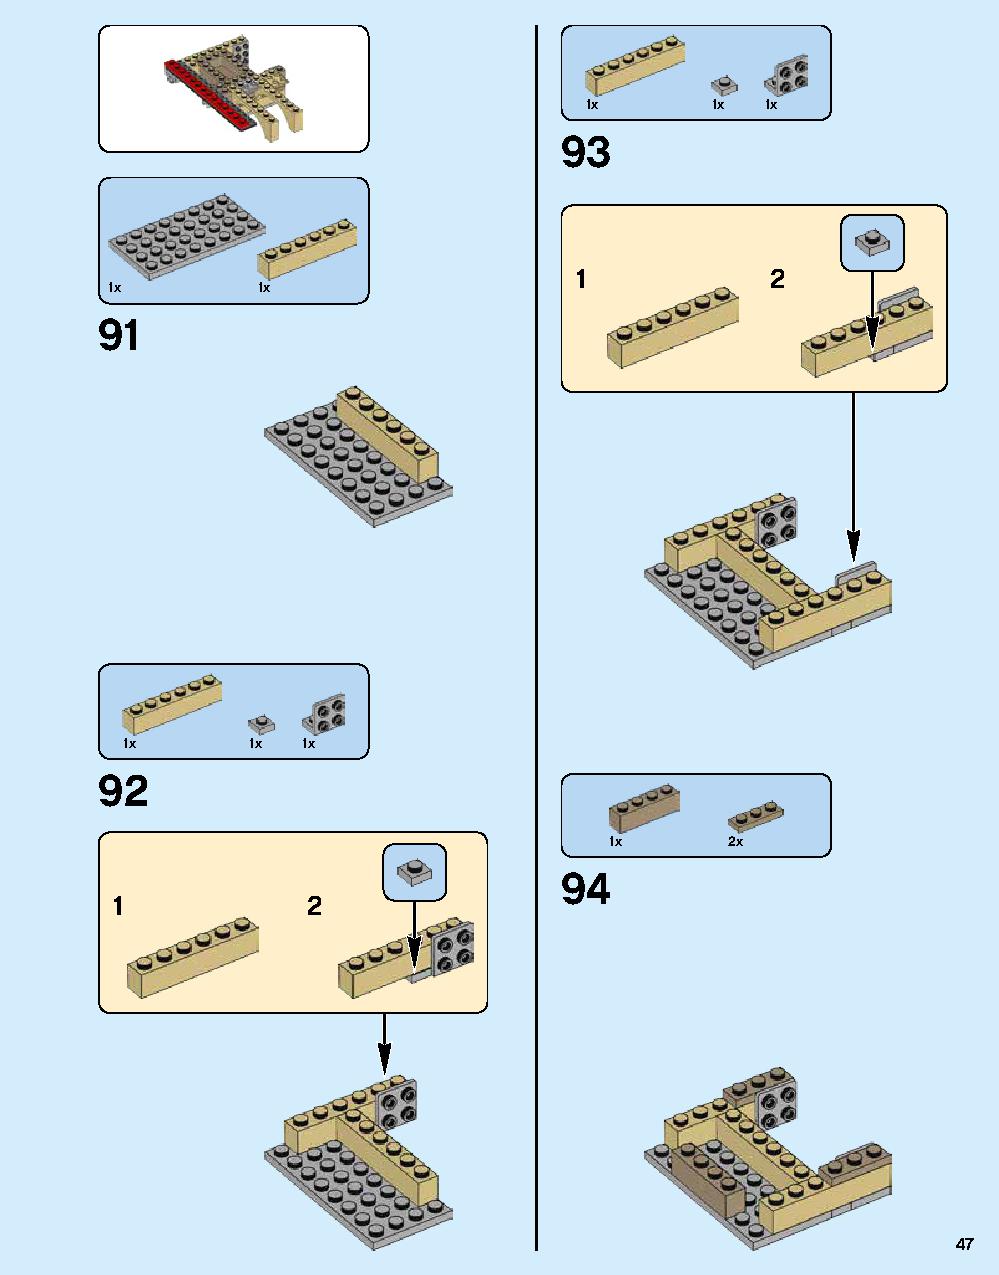 ニンジャゴー シティ 70620 レゴの商品情報 レゴの説明書・組立方法 47 page